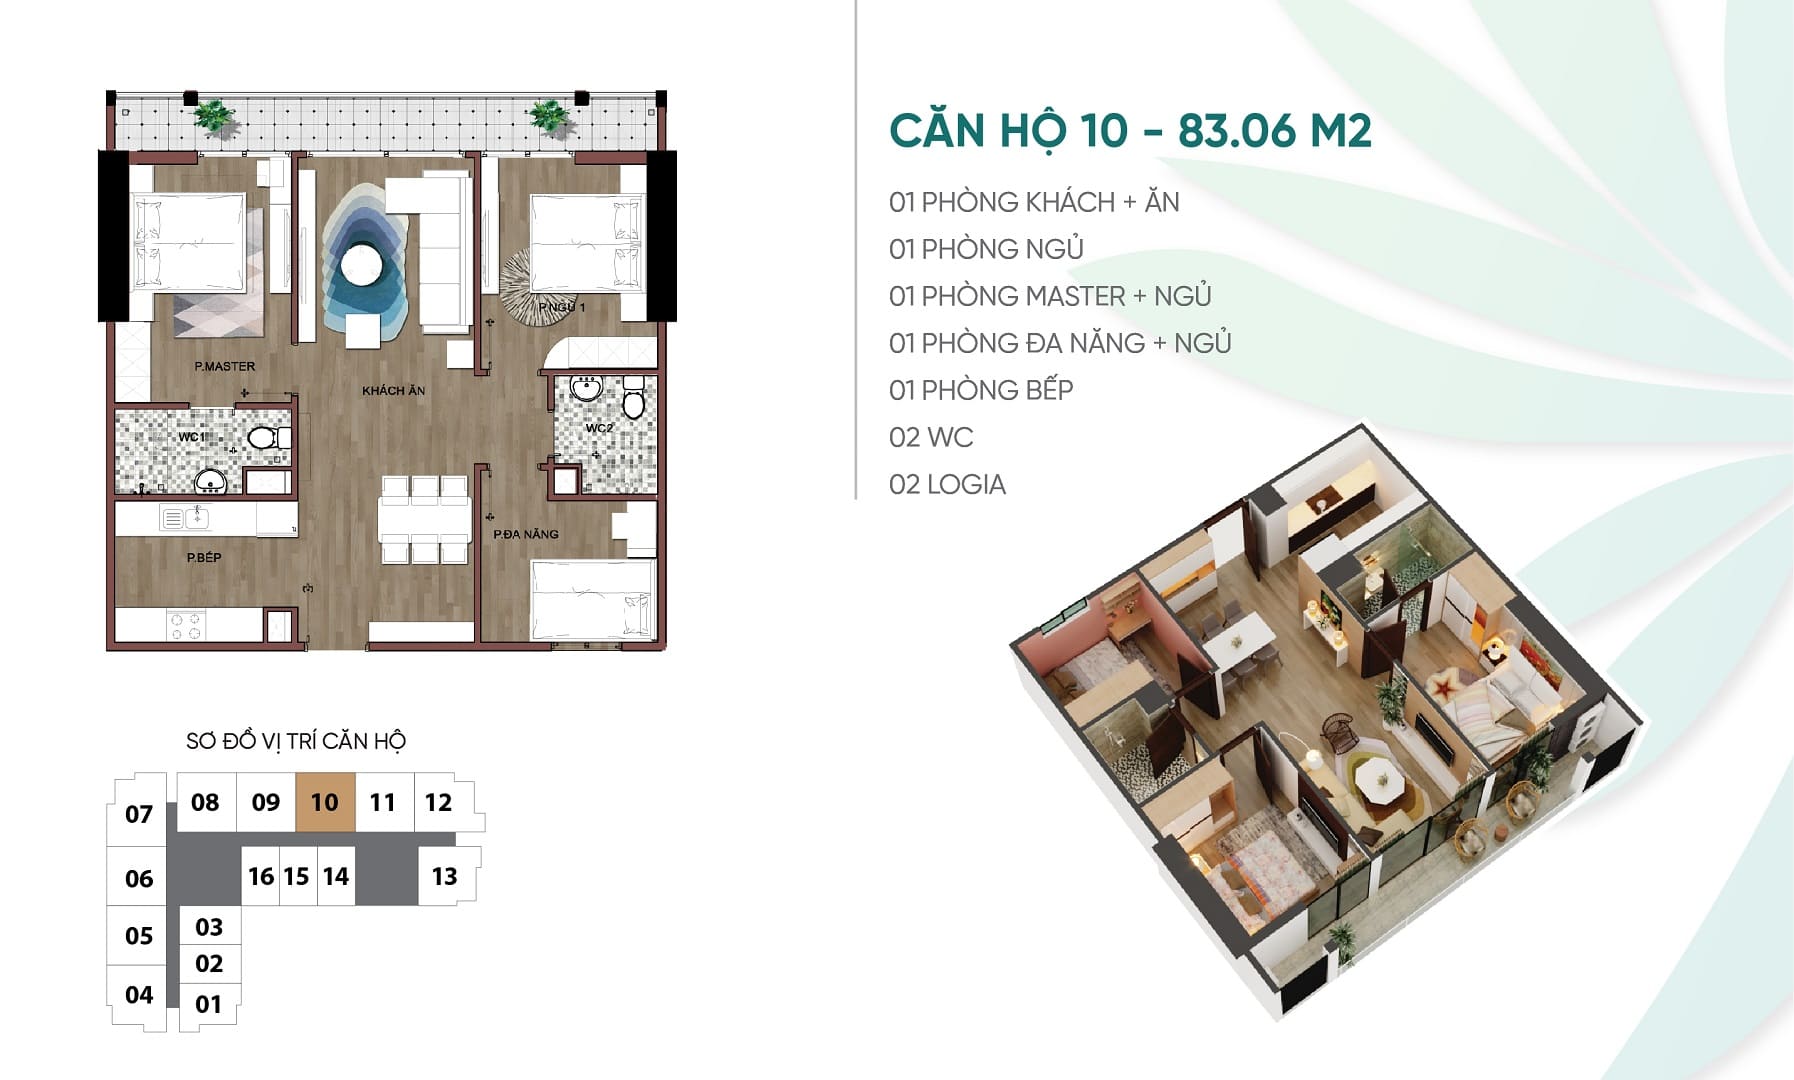 Thiết kế căn hộ chung cư số 10 An Bình Plaza 97 Trần Bình, Mỹ Đình, Nam Từ Liêm.